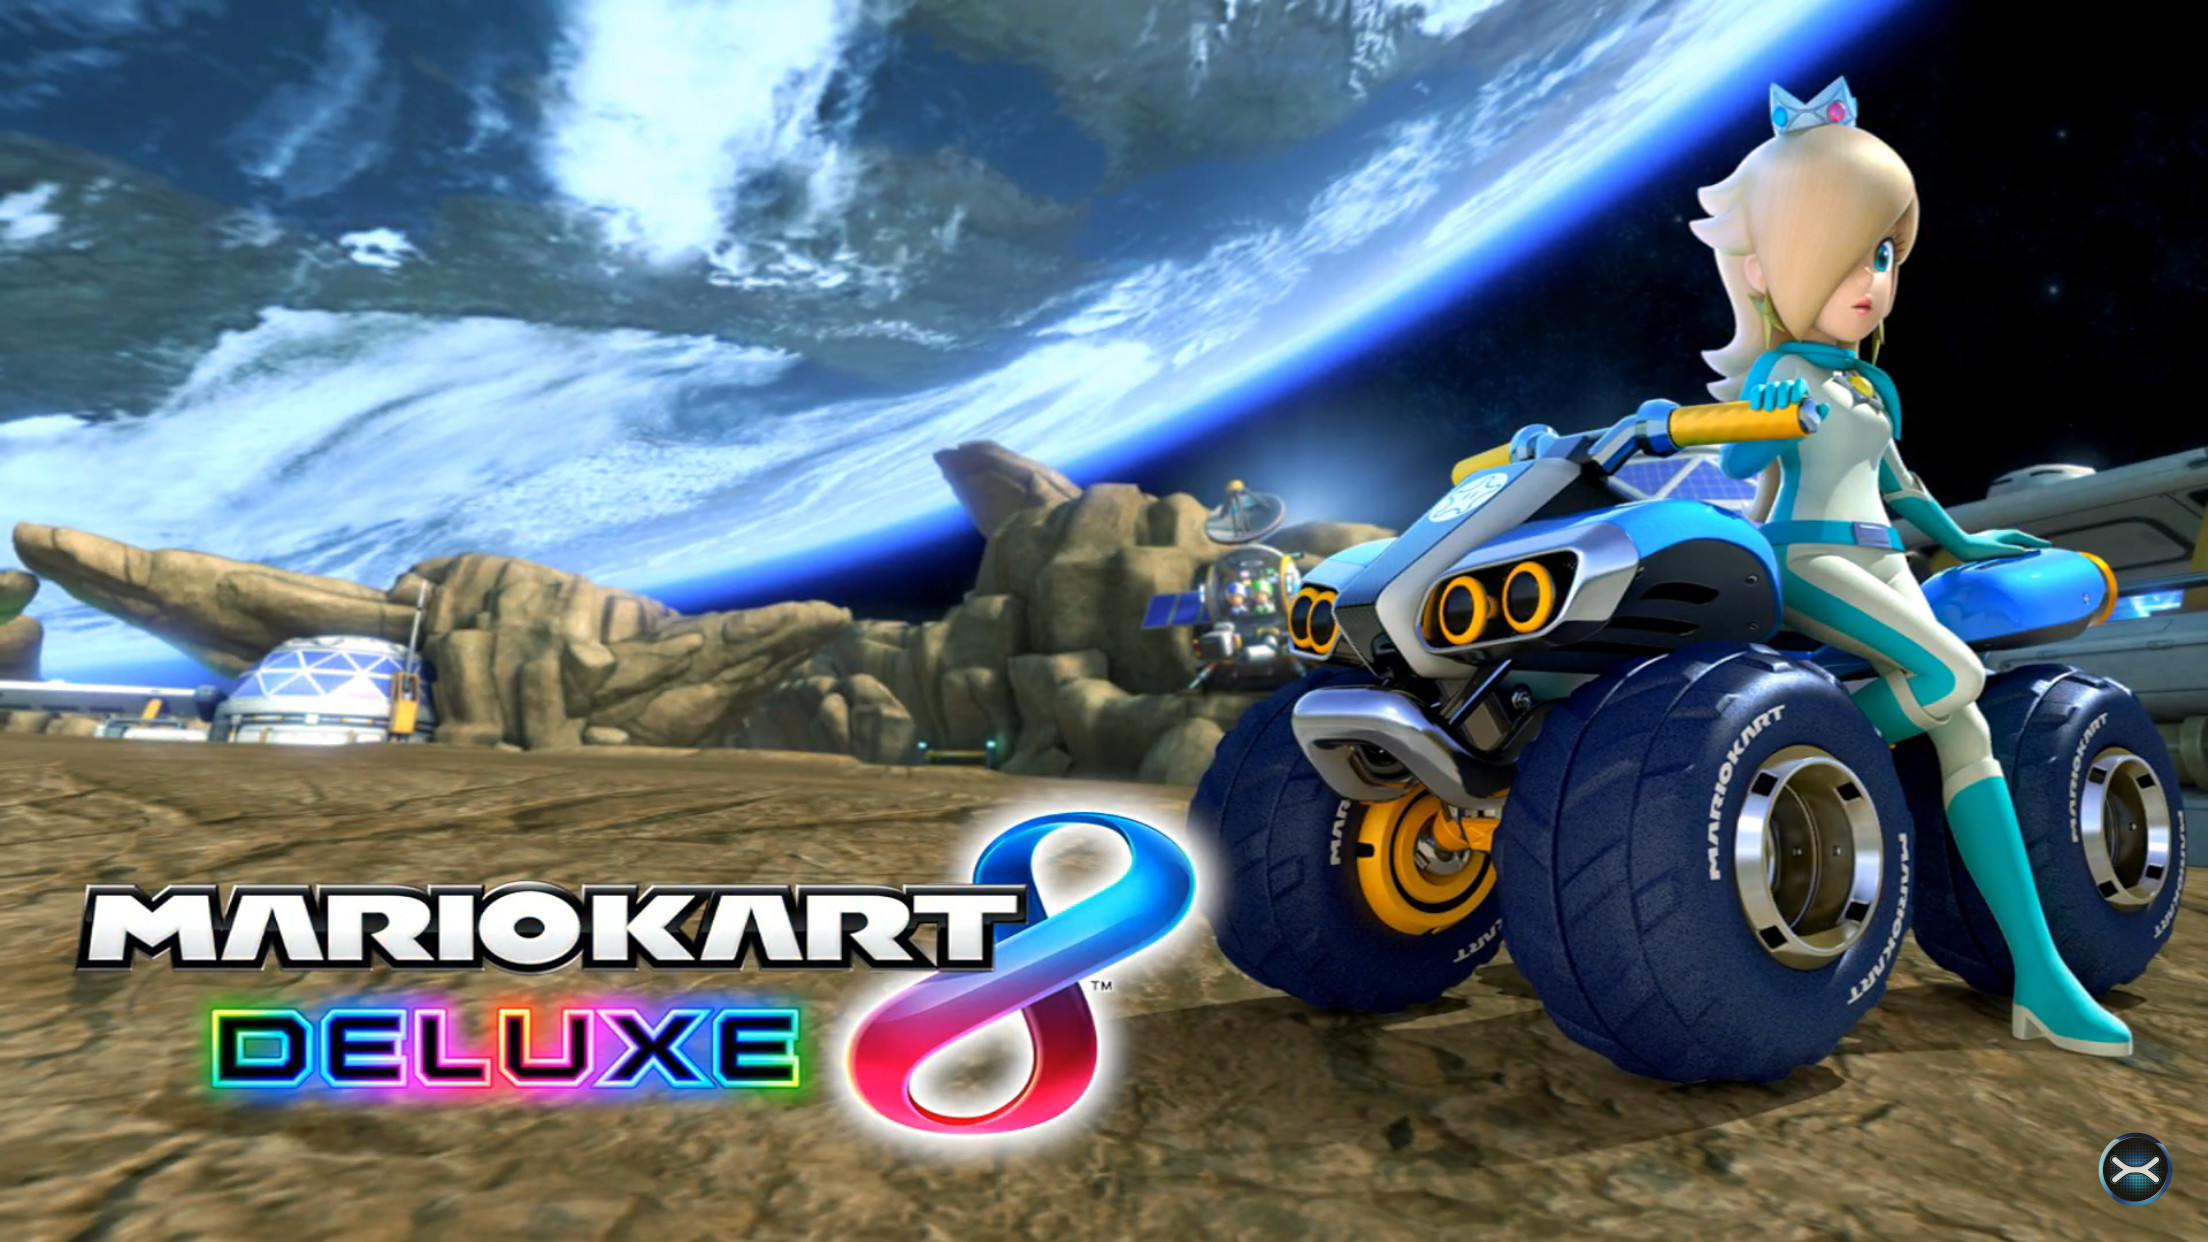 2208x1242 Mario Kart 8 Deluxe - Title Screen